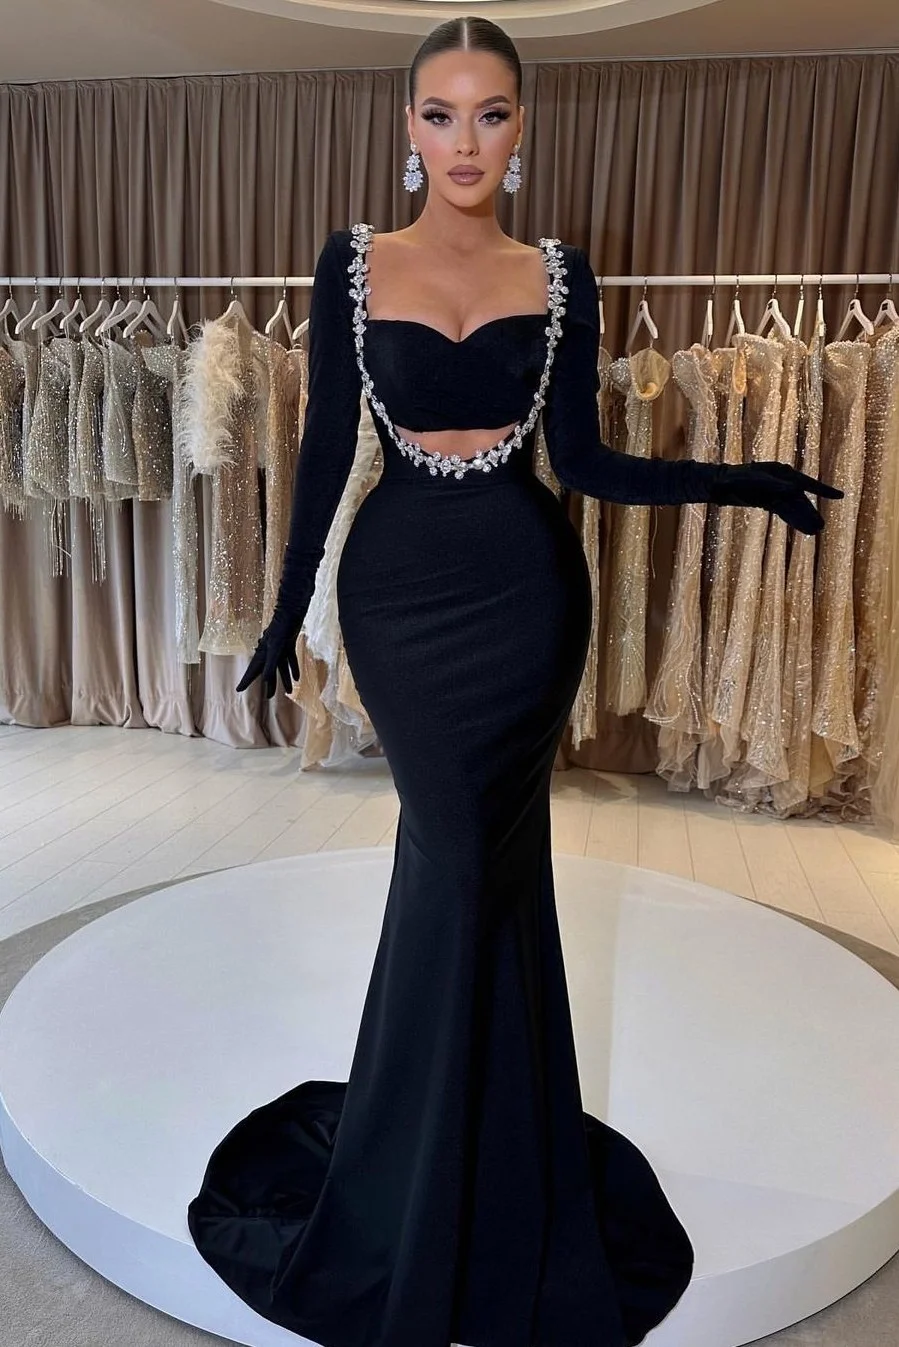 Classic Black Long Sleeve Beaded Mermaid Prom Dress With Gloves | Ballbellas Ballbellas